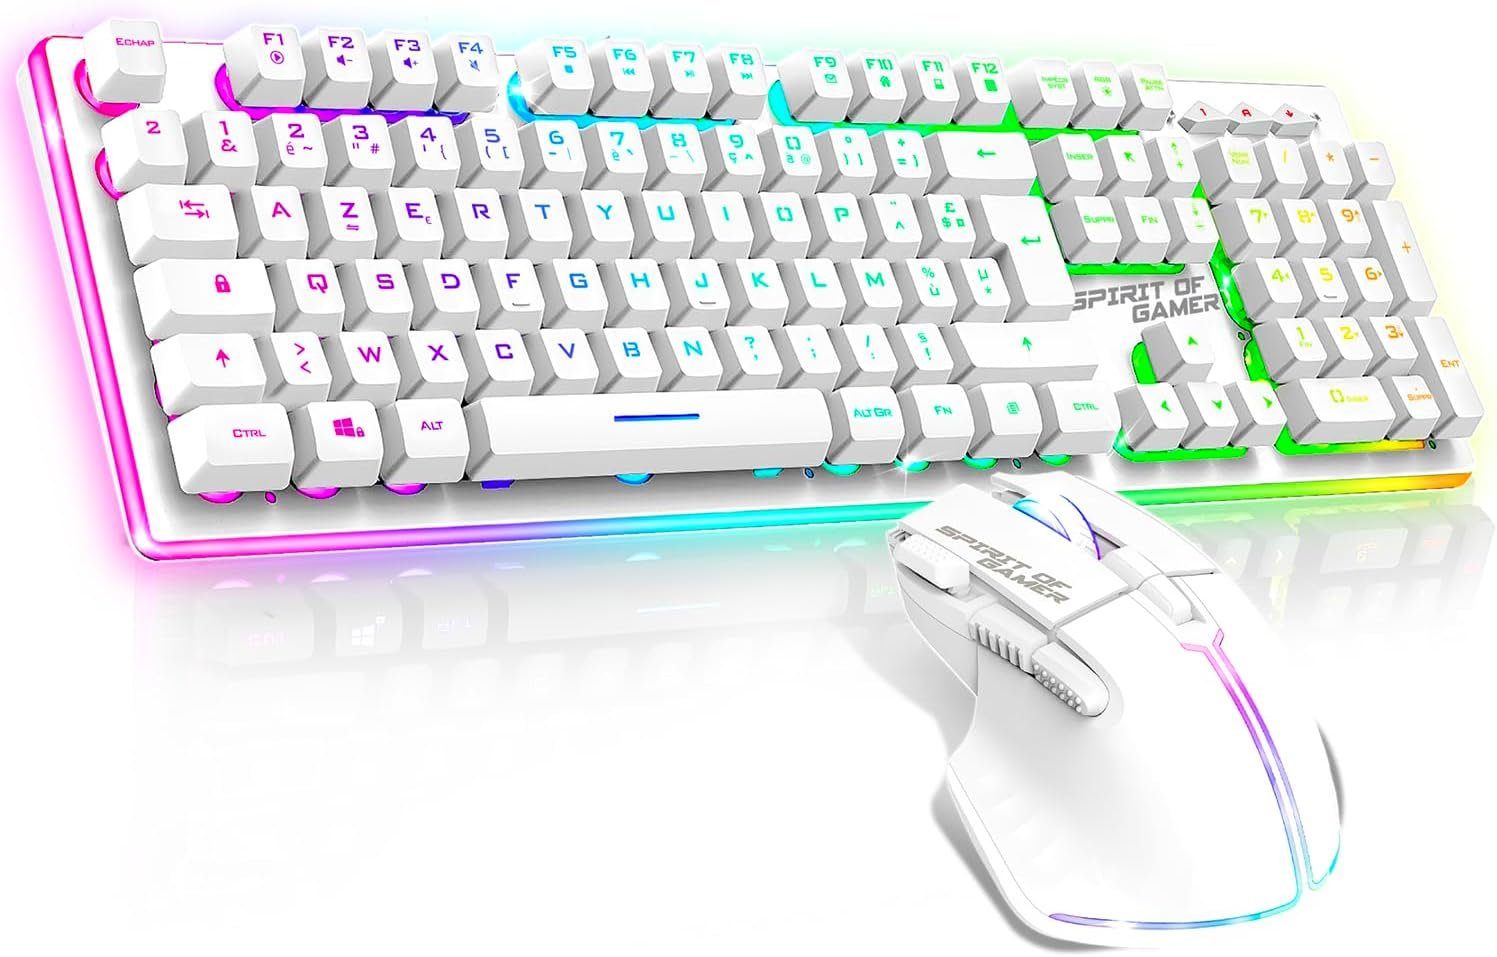 SPIRIT OF GAMER Ultimate 600, Gaming Kabellos Tastatur- und Maus-Set, Gaming LED Tastatur mit Maus 6 Tasten+ LED Kopfhörer Mit KabelMikrofon